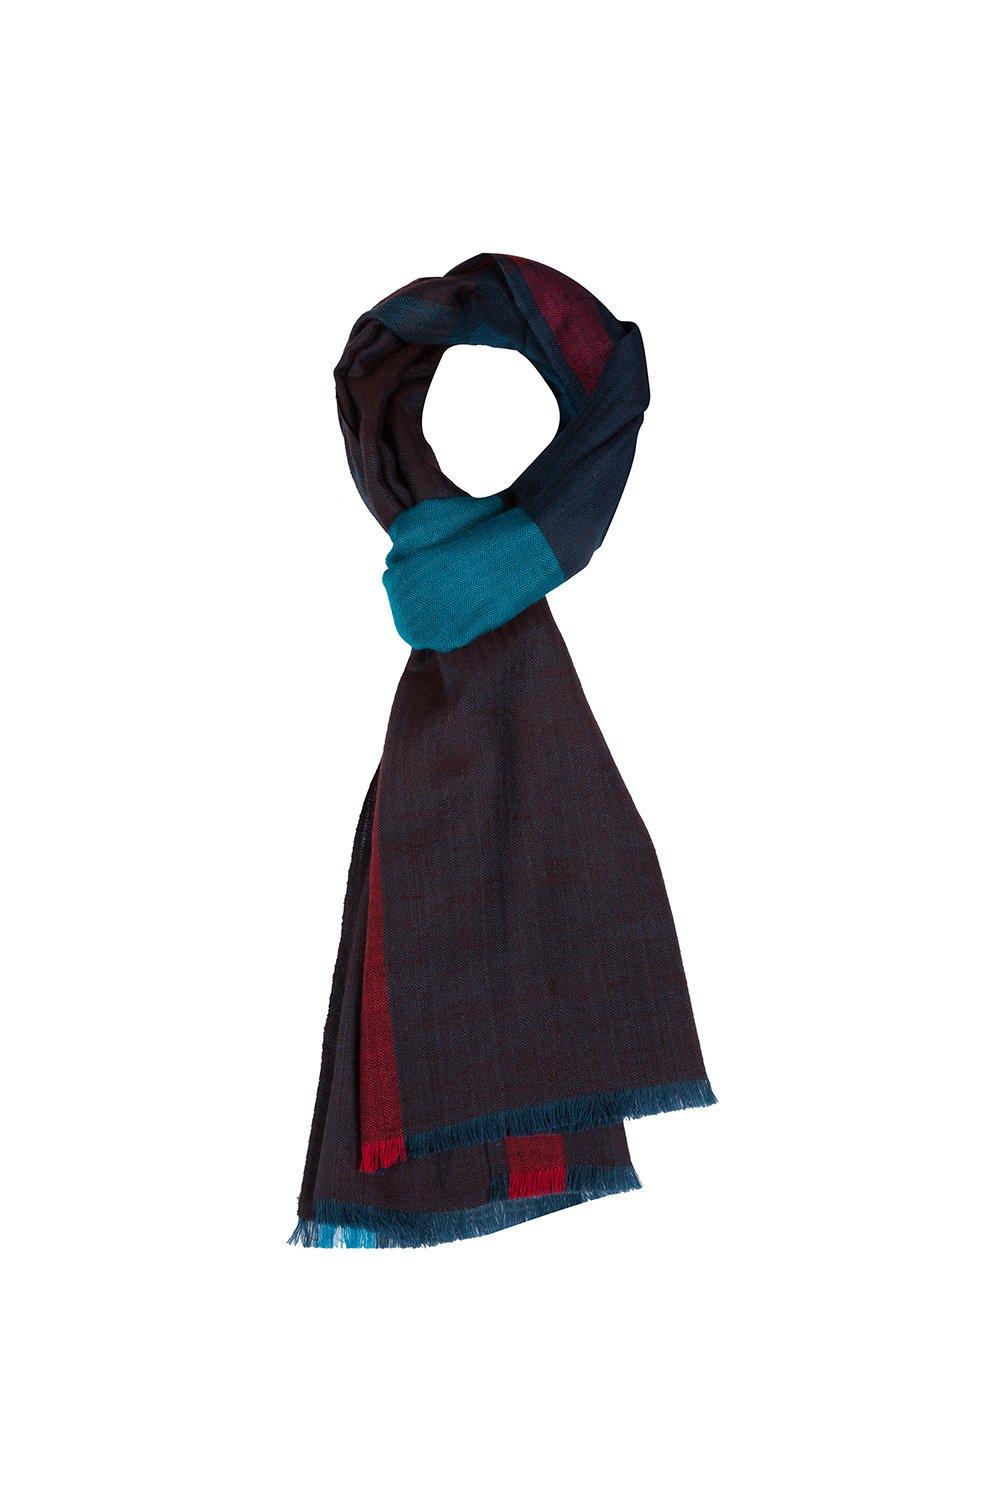 Шейный платок «Градиент» из кашемира и шерсти мериноса Pure Luxuries London, синий